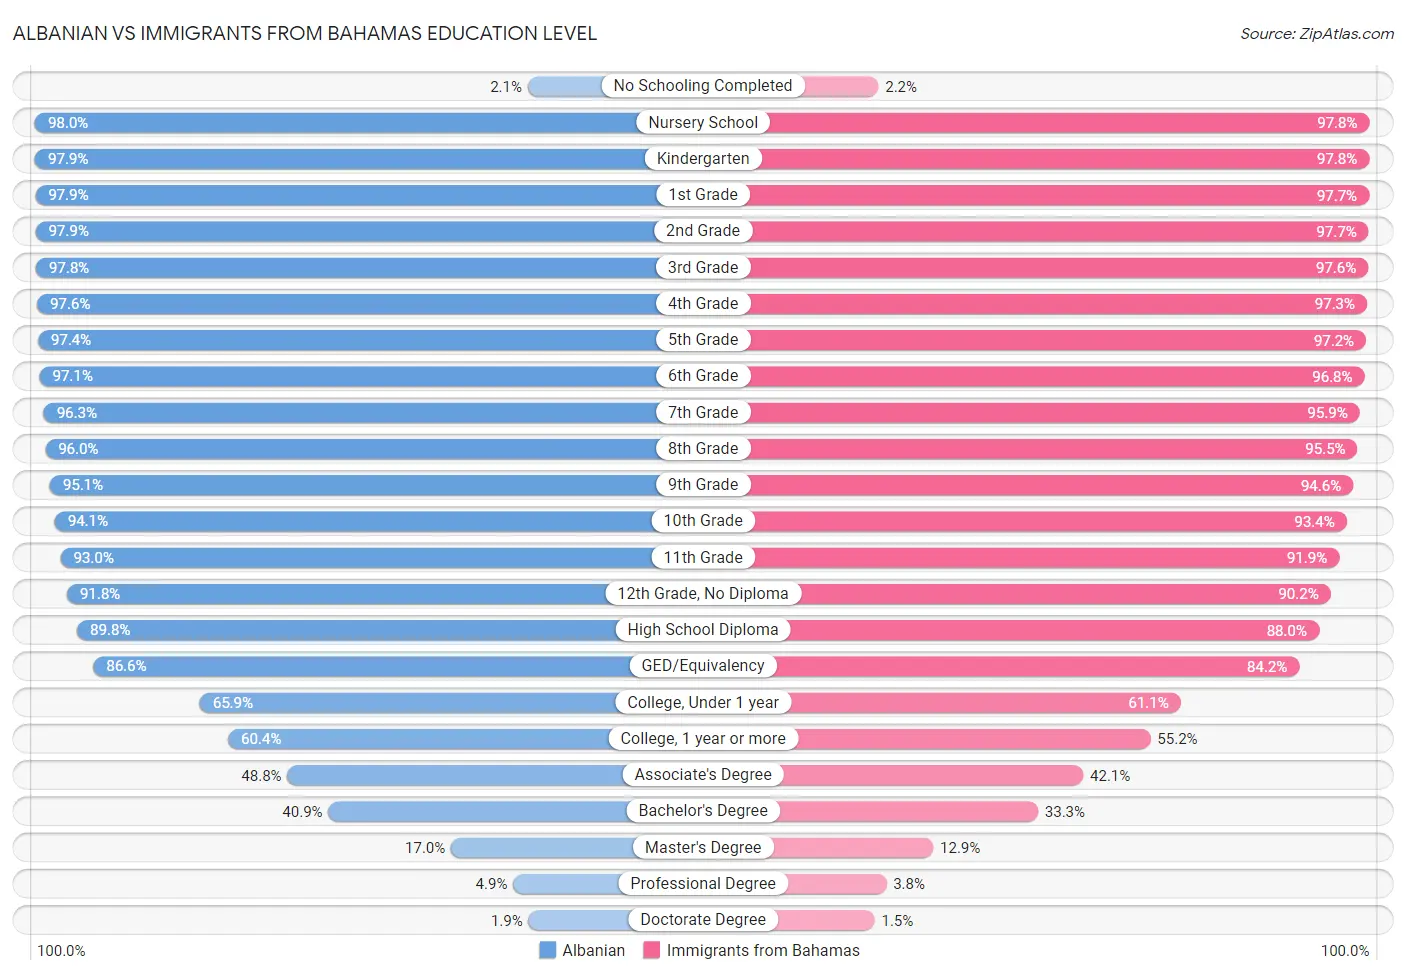 Albanian vs Immigrants from Bahamas Education Level